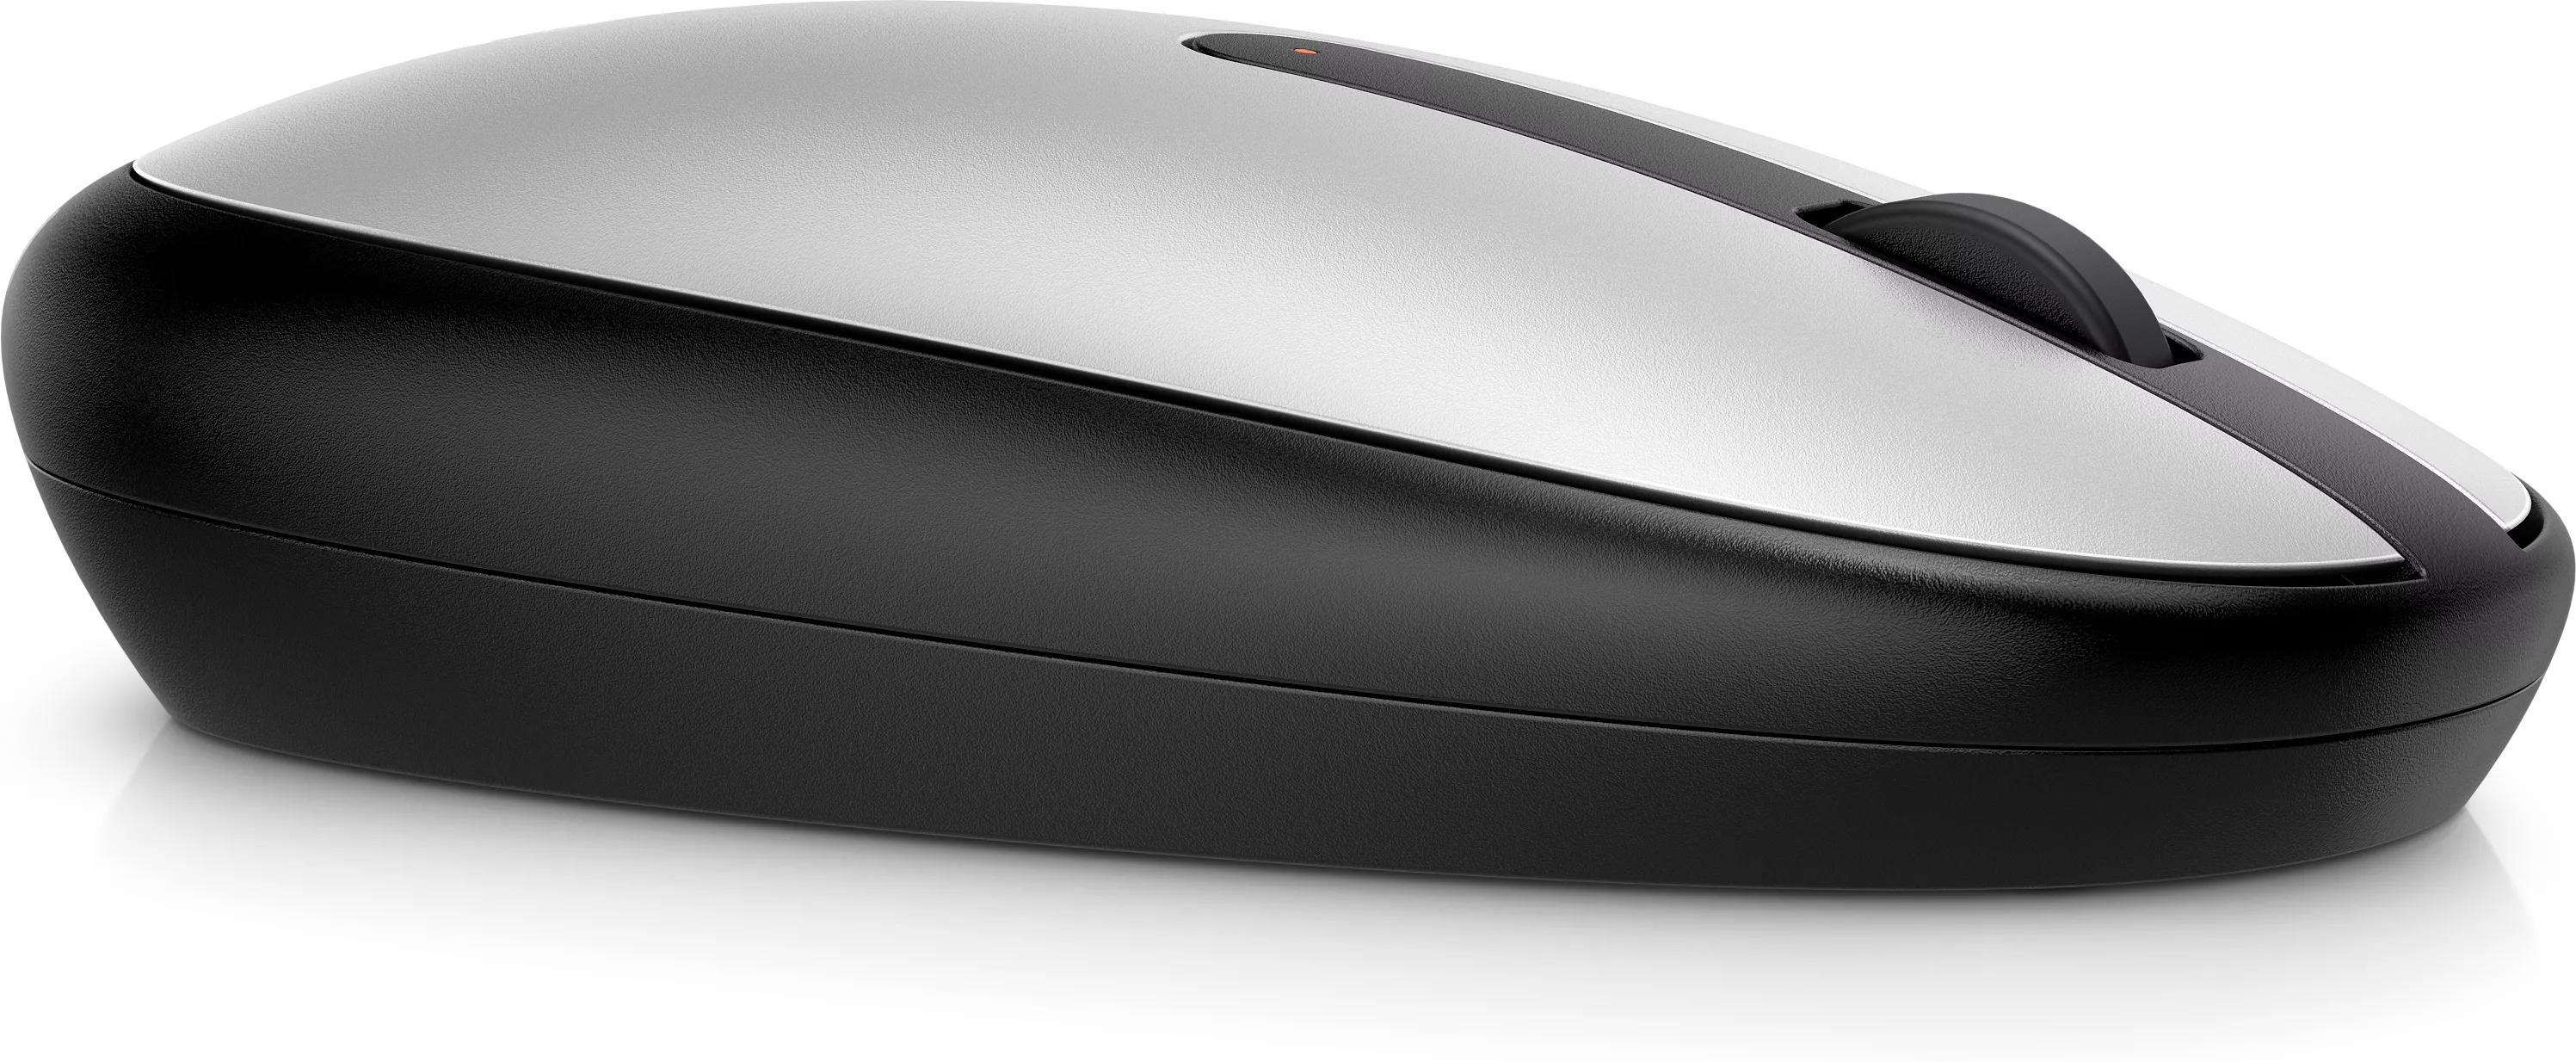 Vente HP 240 Bluetooth Mouse Pike Silver HP au meilleur prix - visuel 2